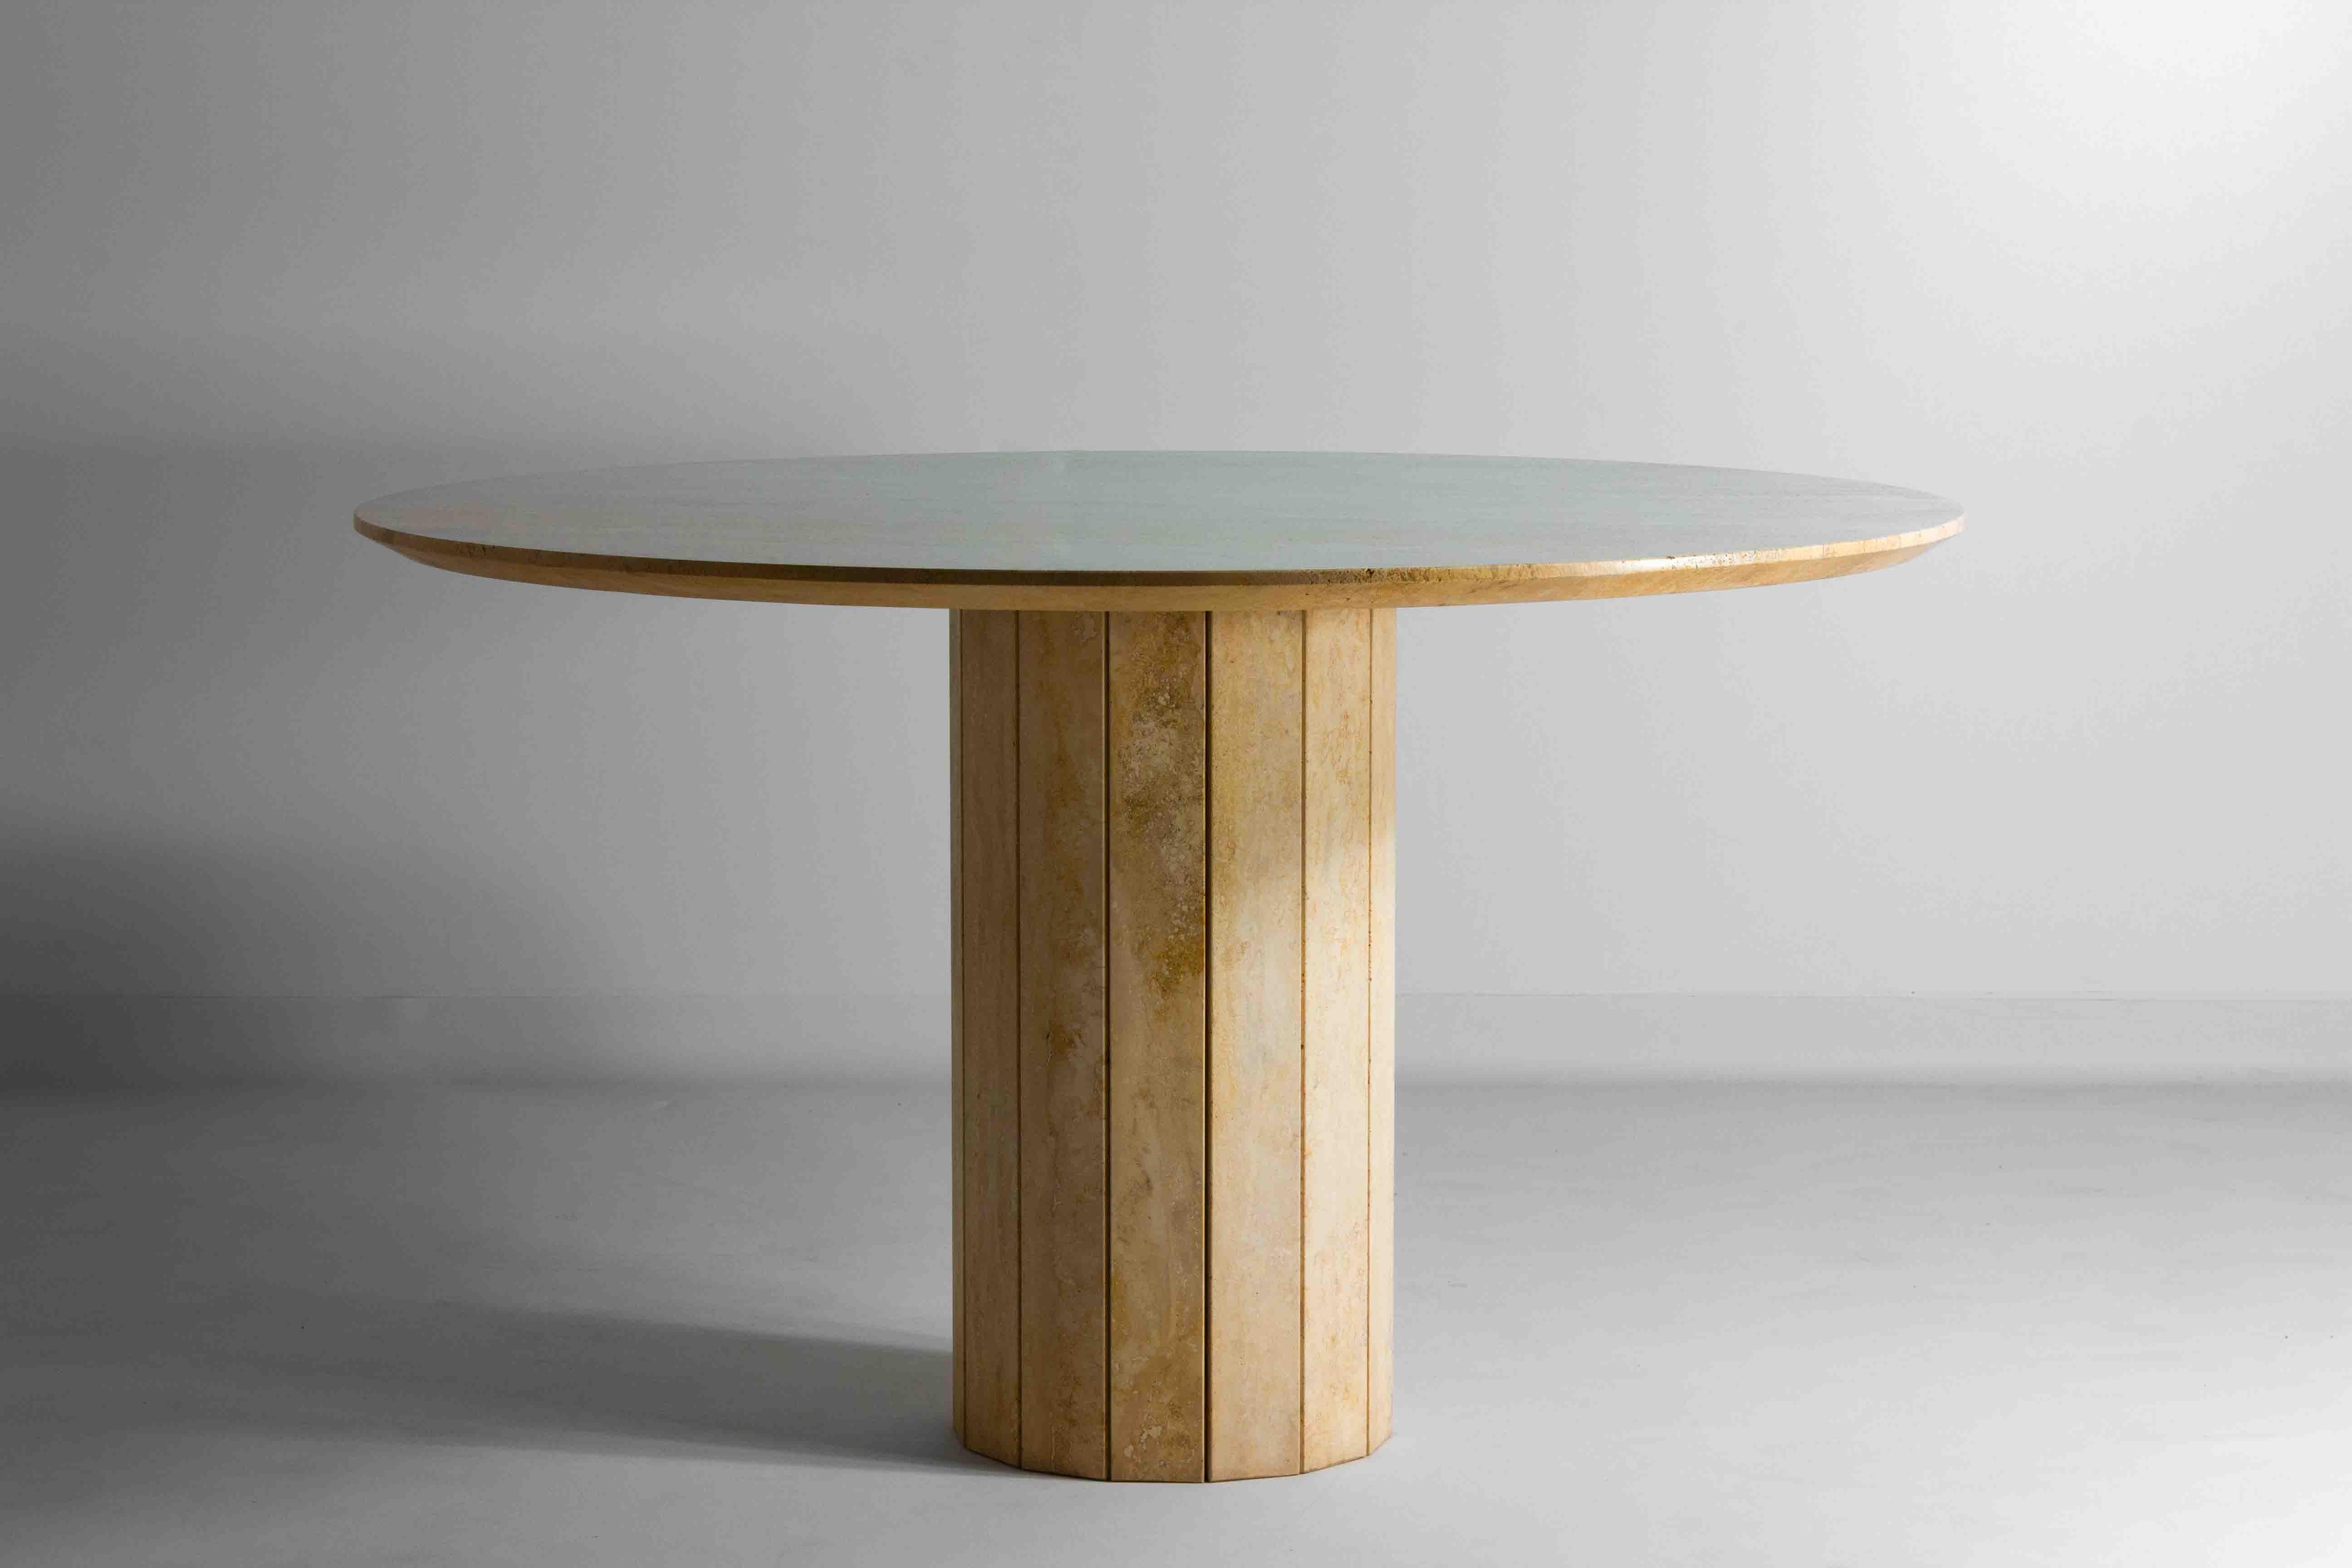 Dieser exquisite runde Esstisch aus italienischem Travertin weist natürliche Wellenmuster in der Tischplatte auf. Dieses Stück ist in perfektem Zustand und bietet problemlos Platz für 6 Personen